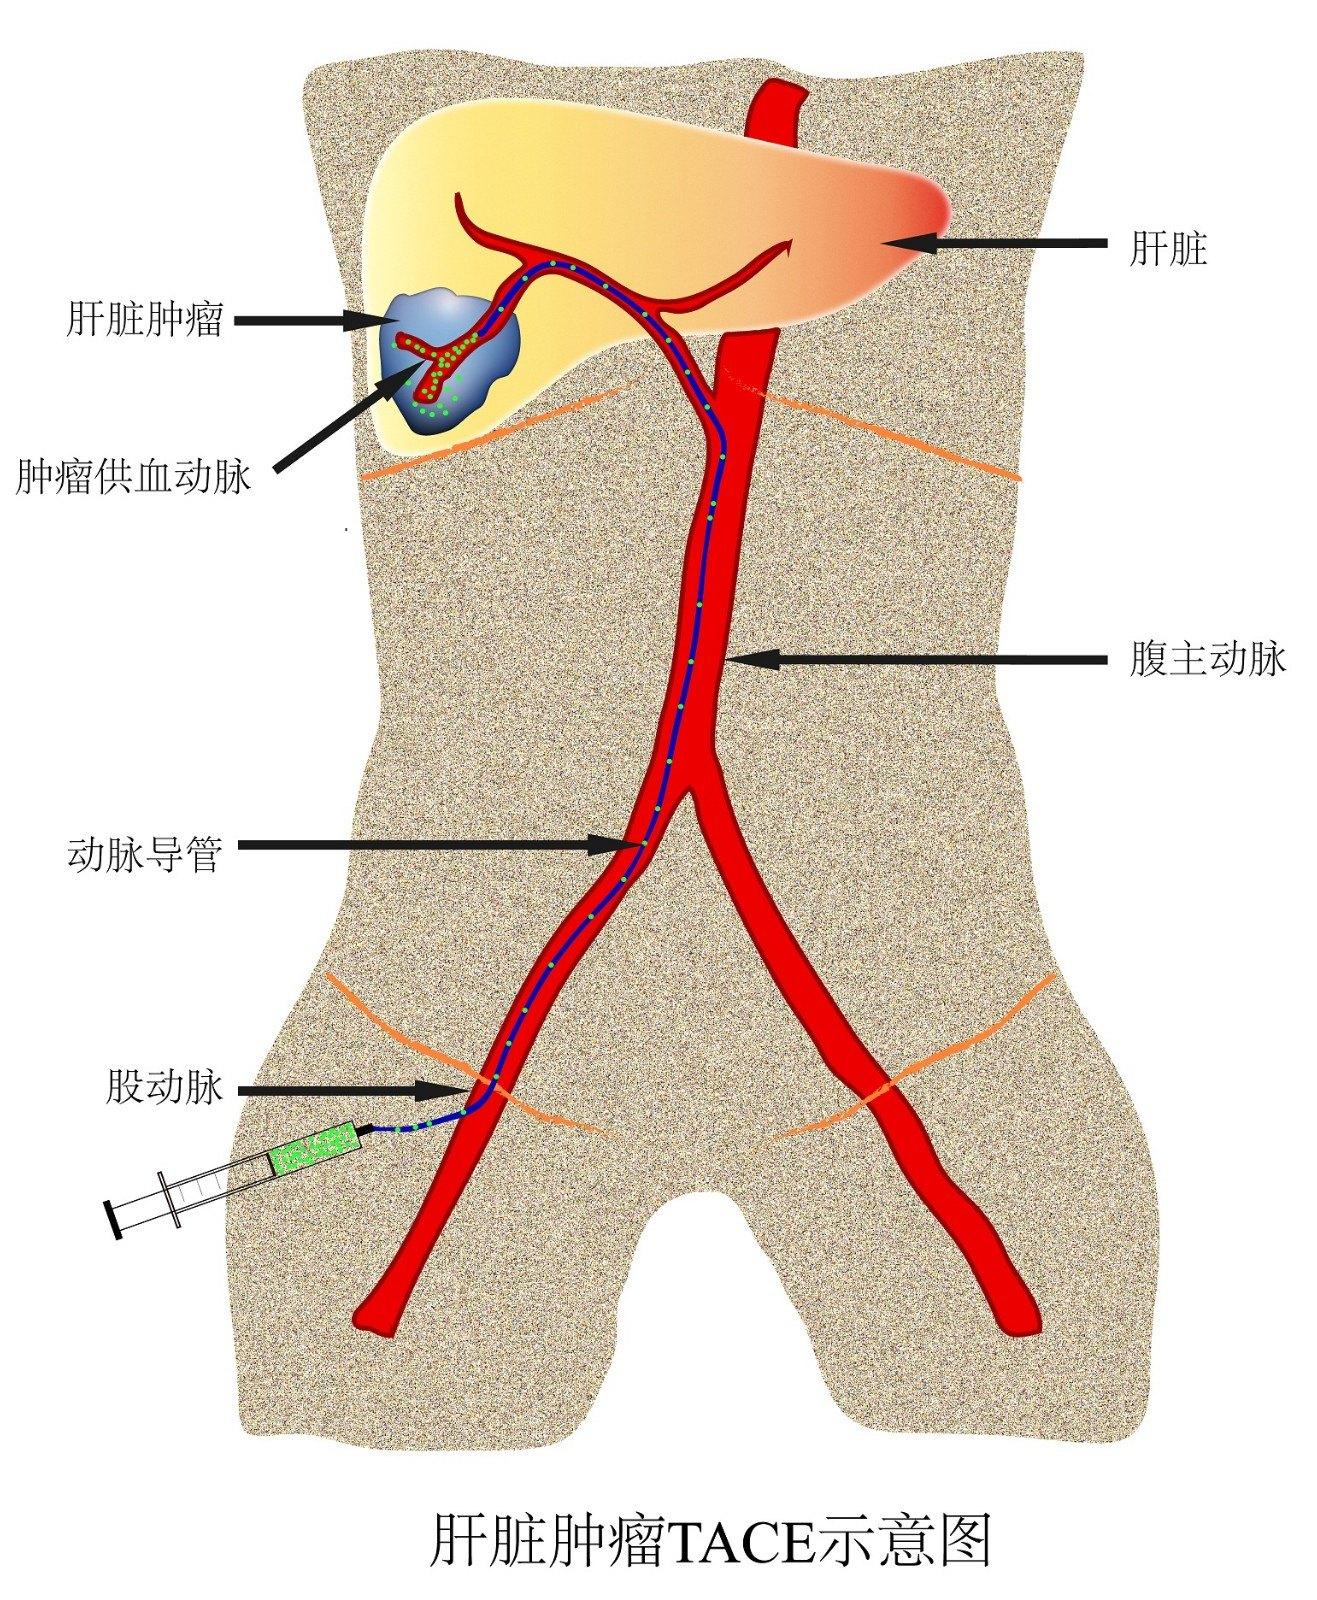 在大腿上局部麻醉,打一个孔进入血管,向上沿着血管的走行找到肝动脉